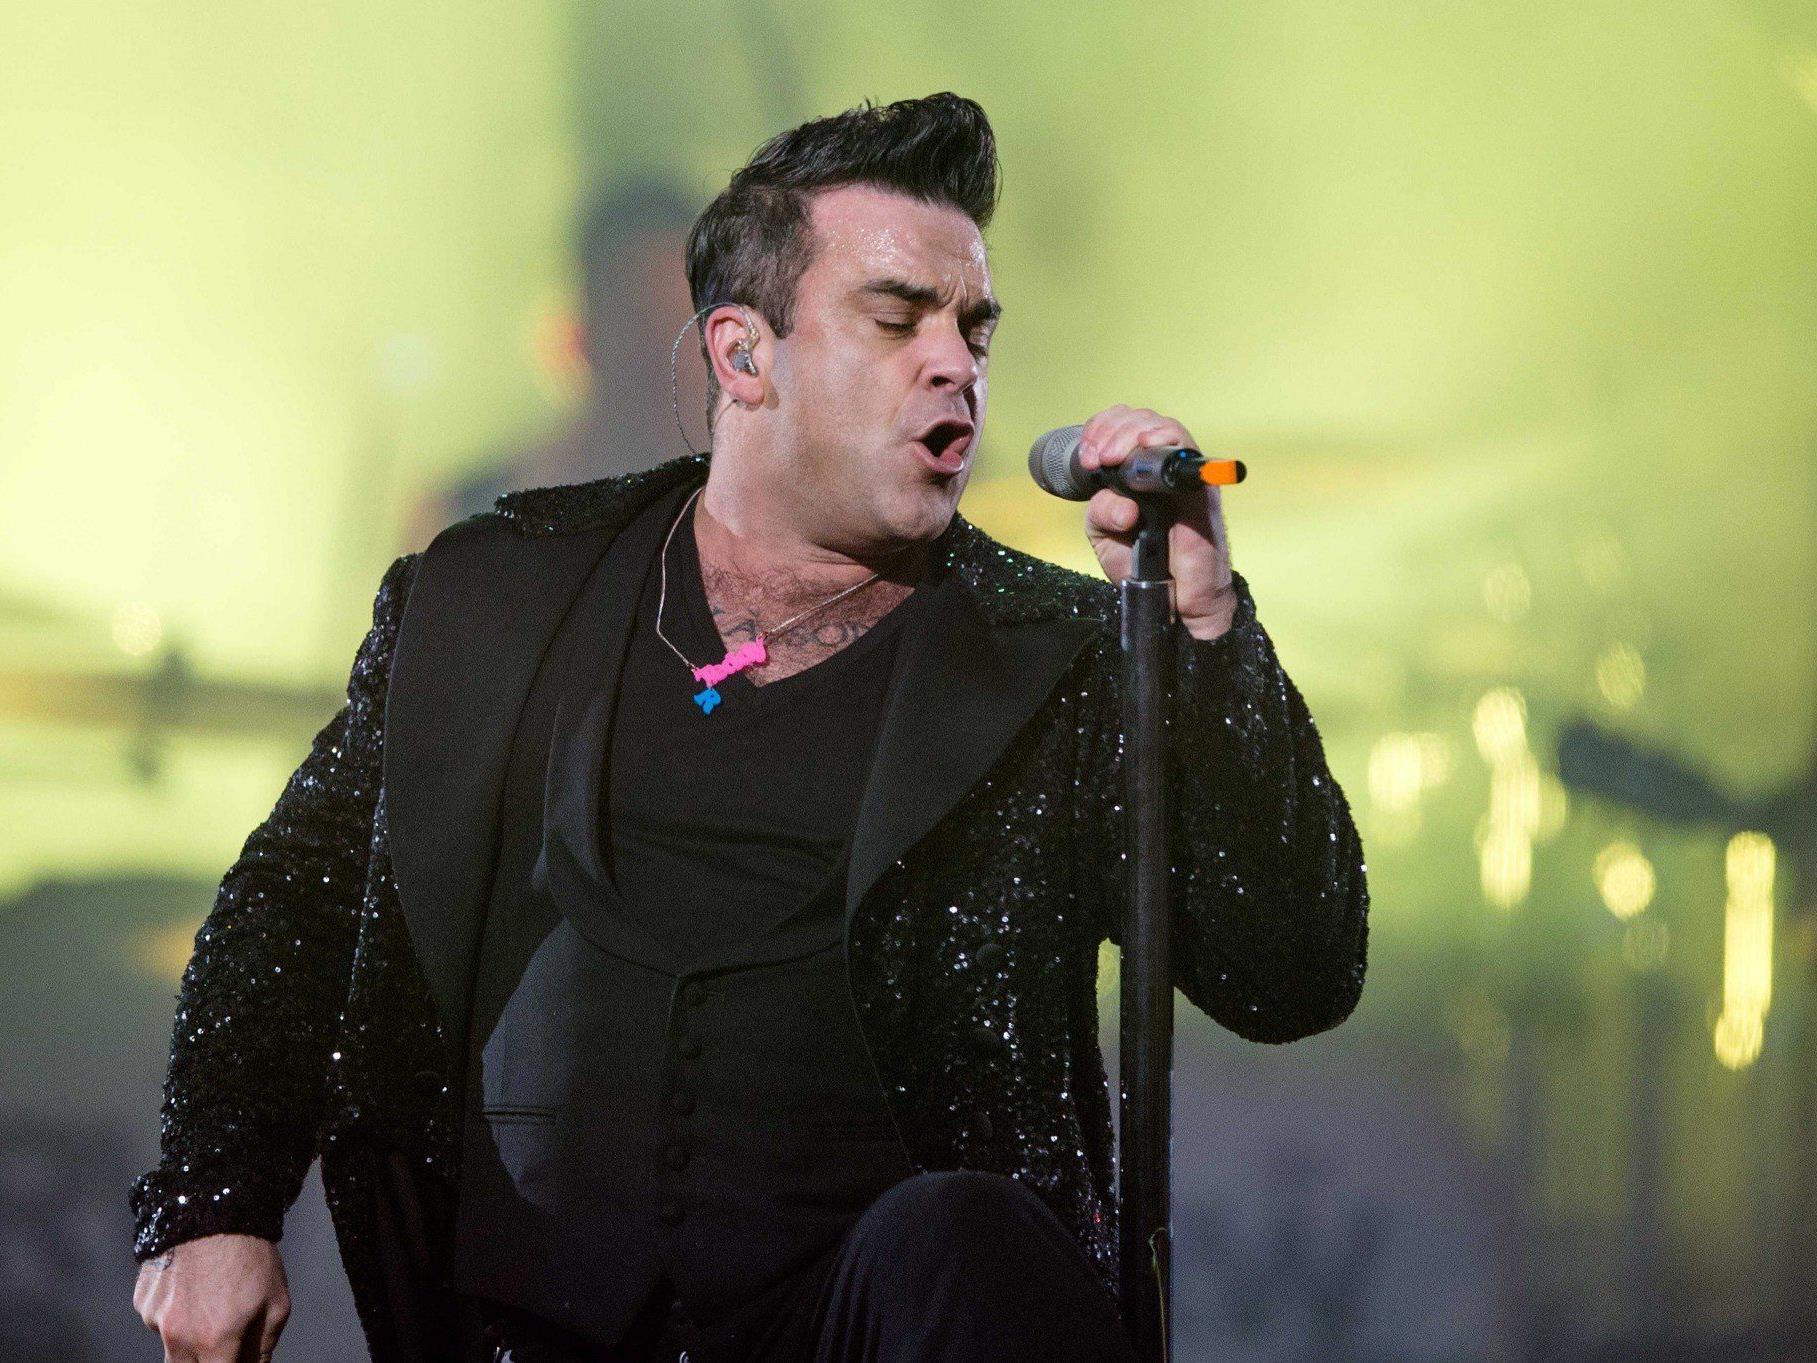 Robbie Williams live im Kino - Cineplexx überträgt das Tallinn-Konzert des britischen Superstars